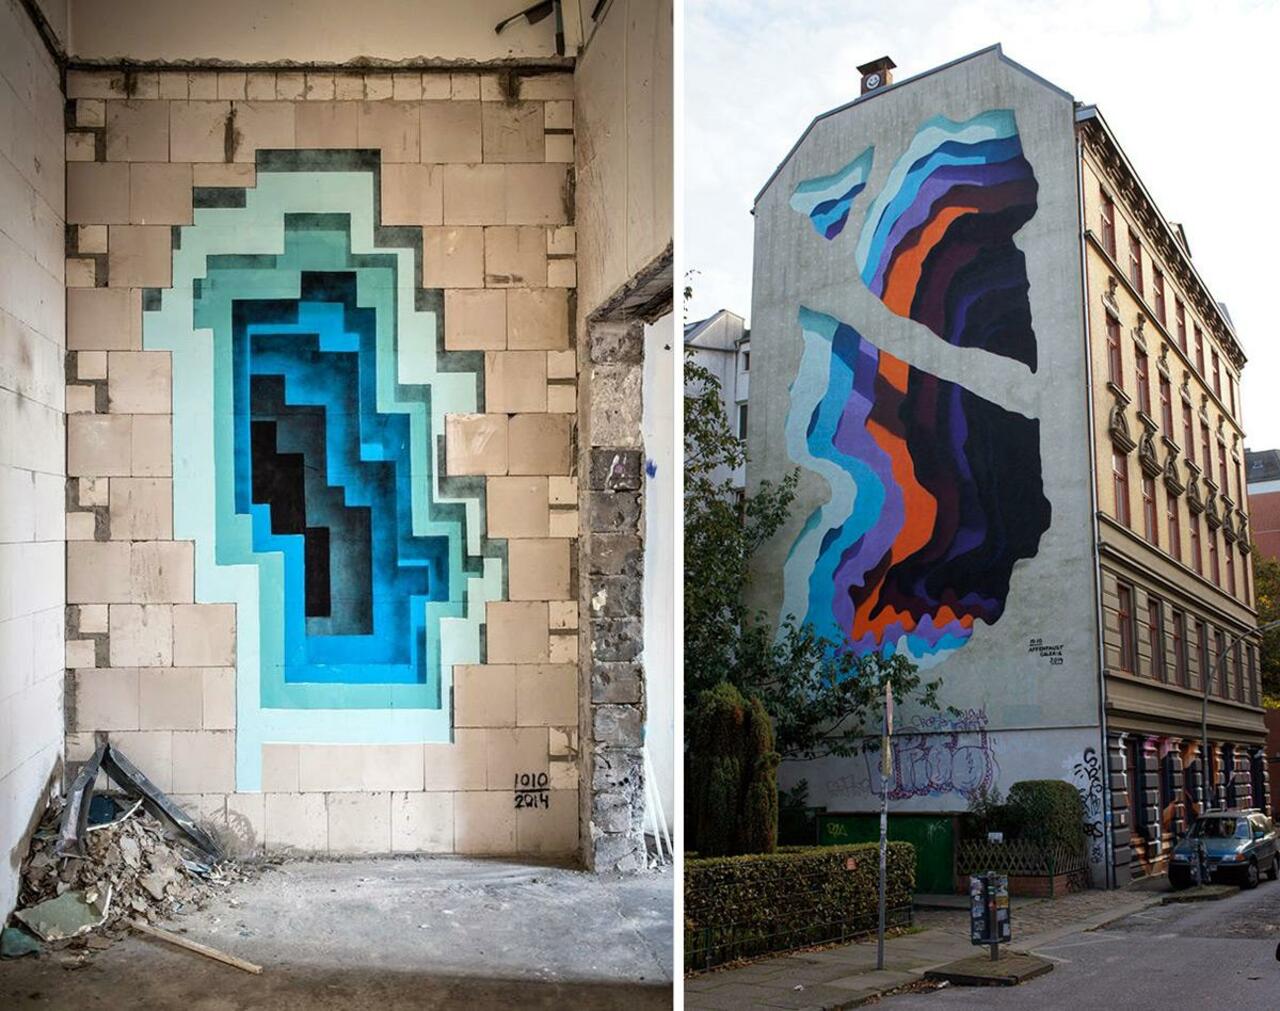 Hidden Portals of Colorful #StreeArt -  we love this!
 #Mural #Hidden #Graffiti
http://bit.ly/1NAsYiC http://t.co/2rLYrn1QpL